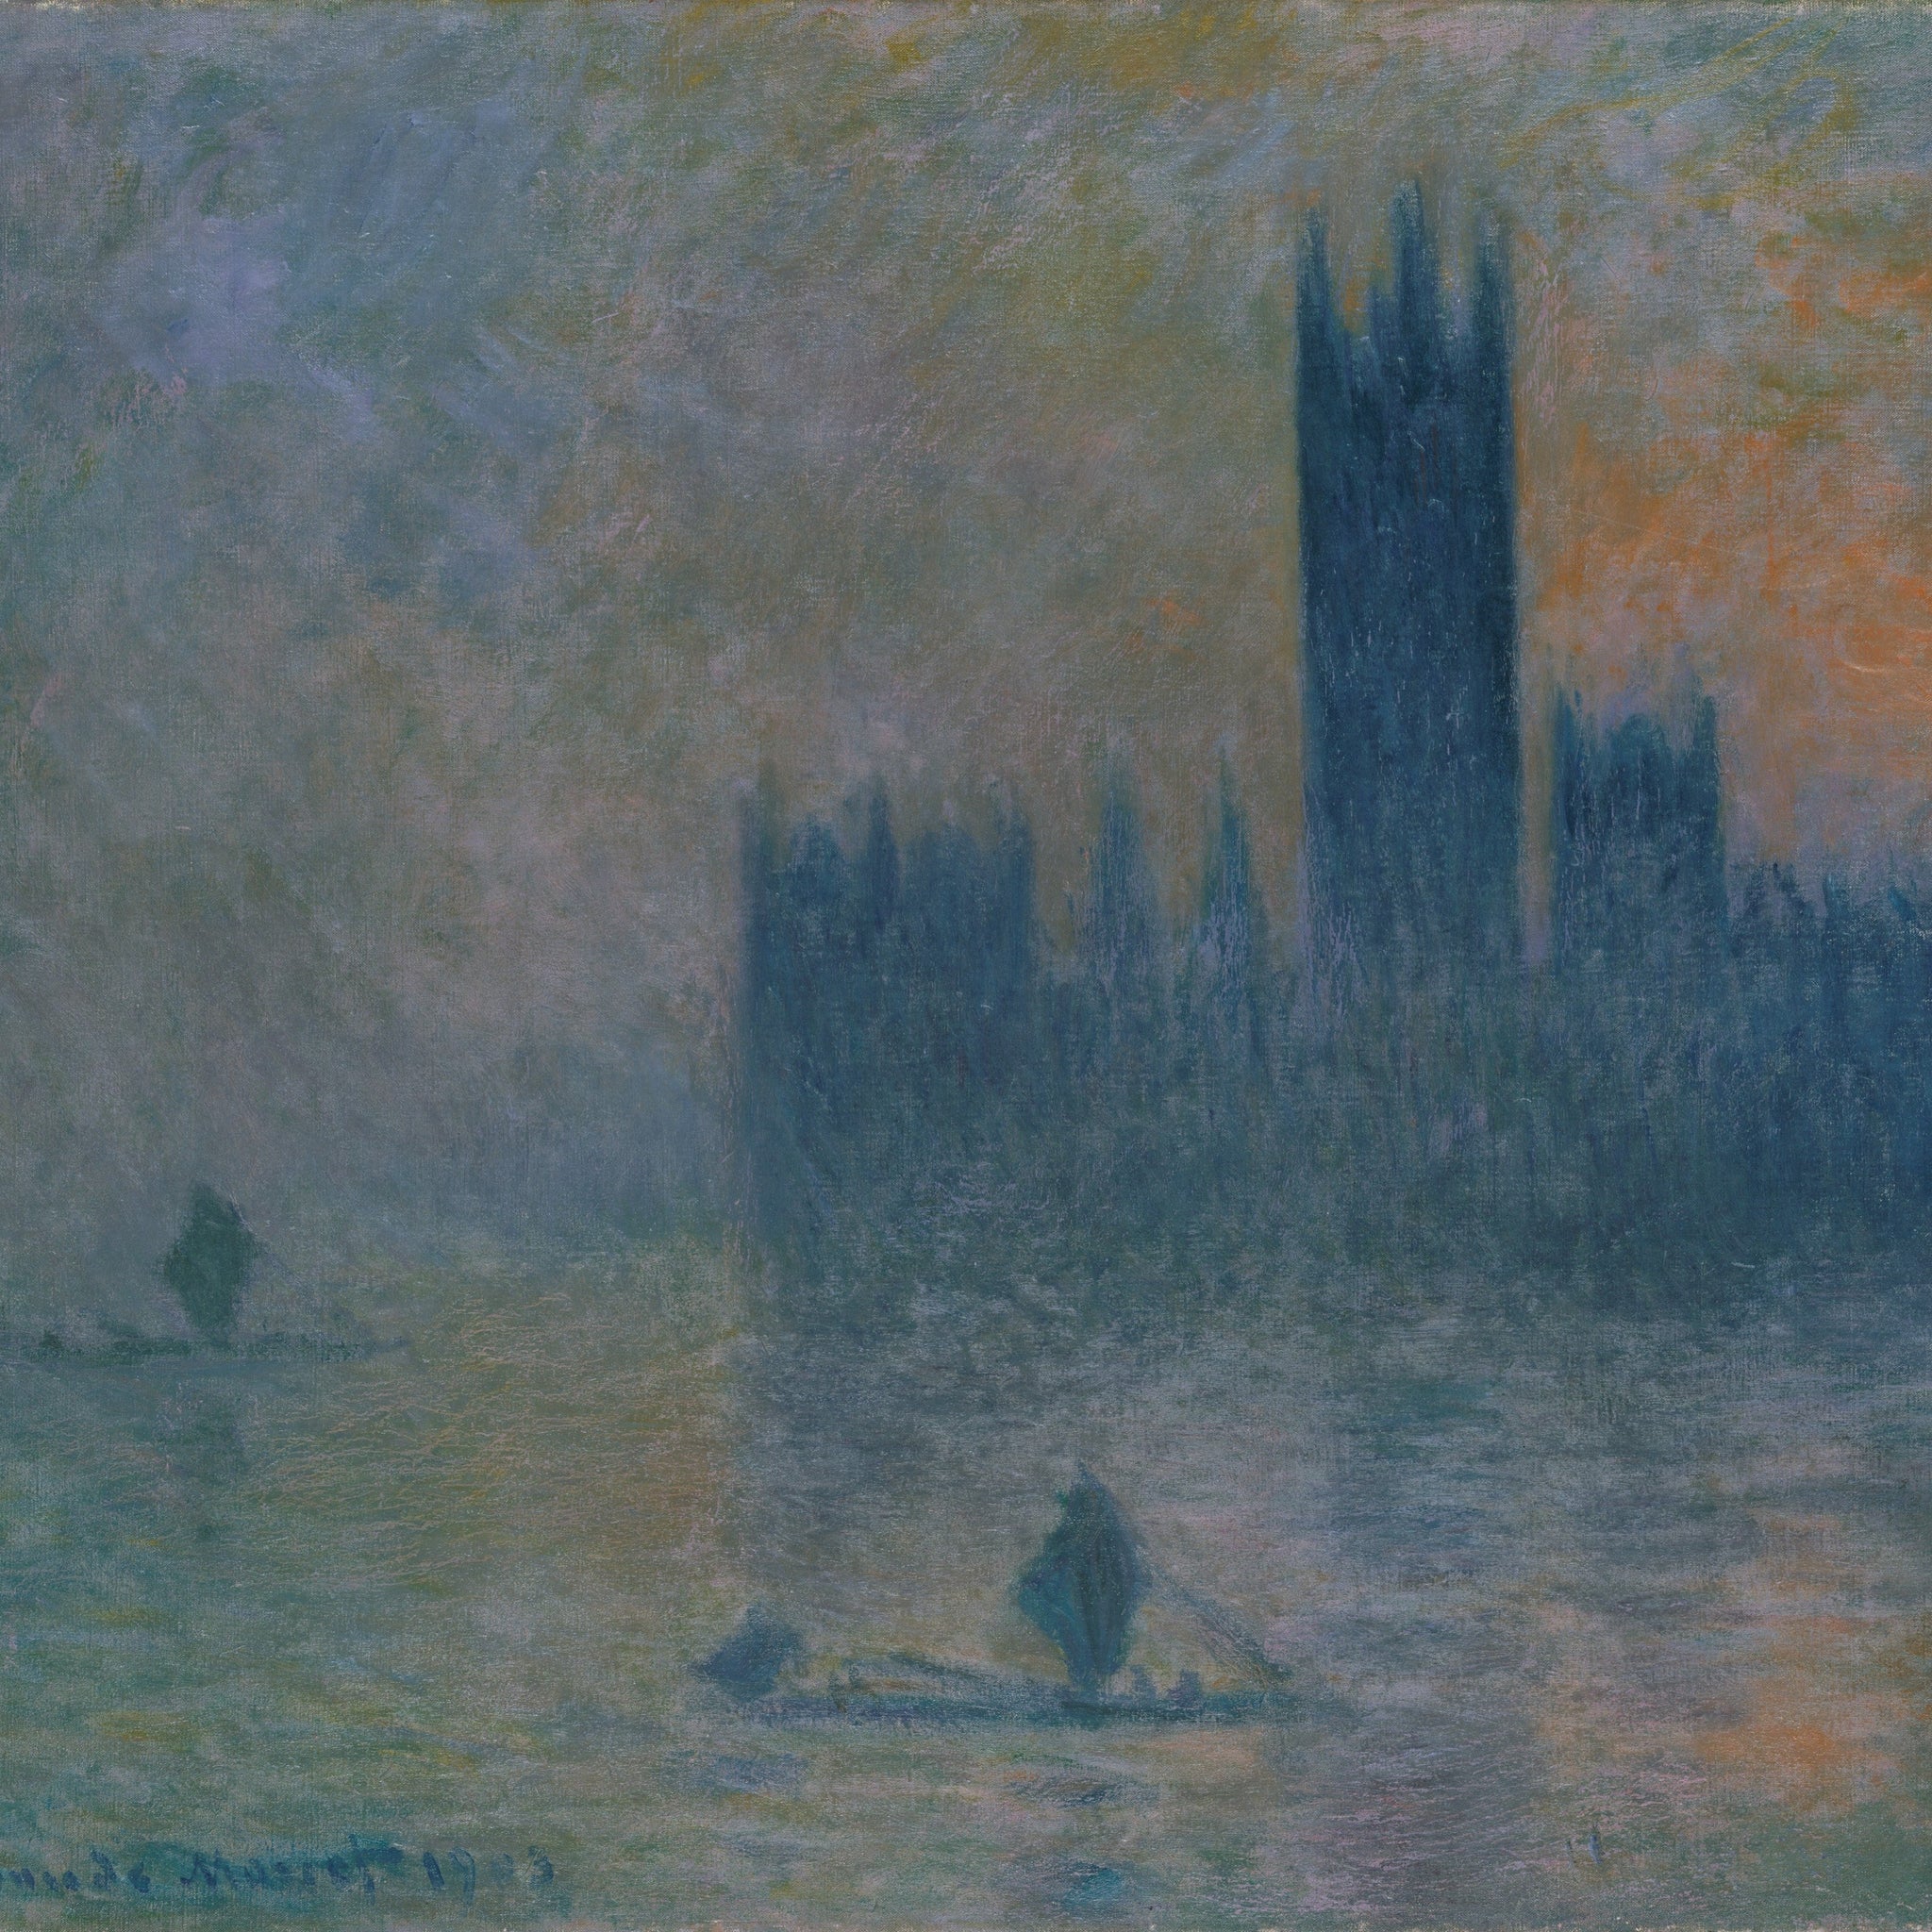 Londres, le Parlement (Effet de brouillard) (W 1609) - Claude Monet